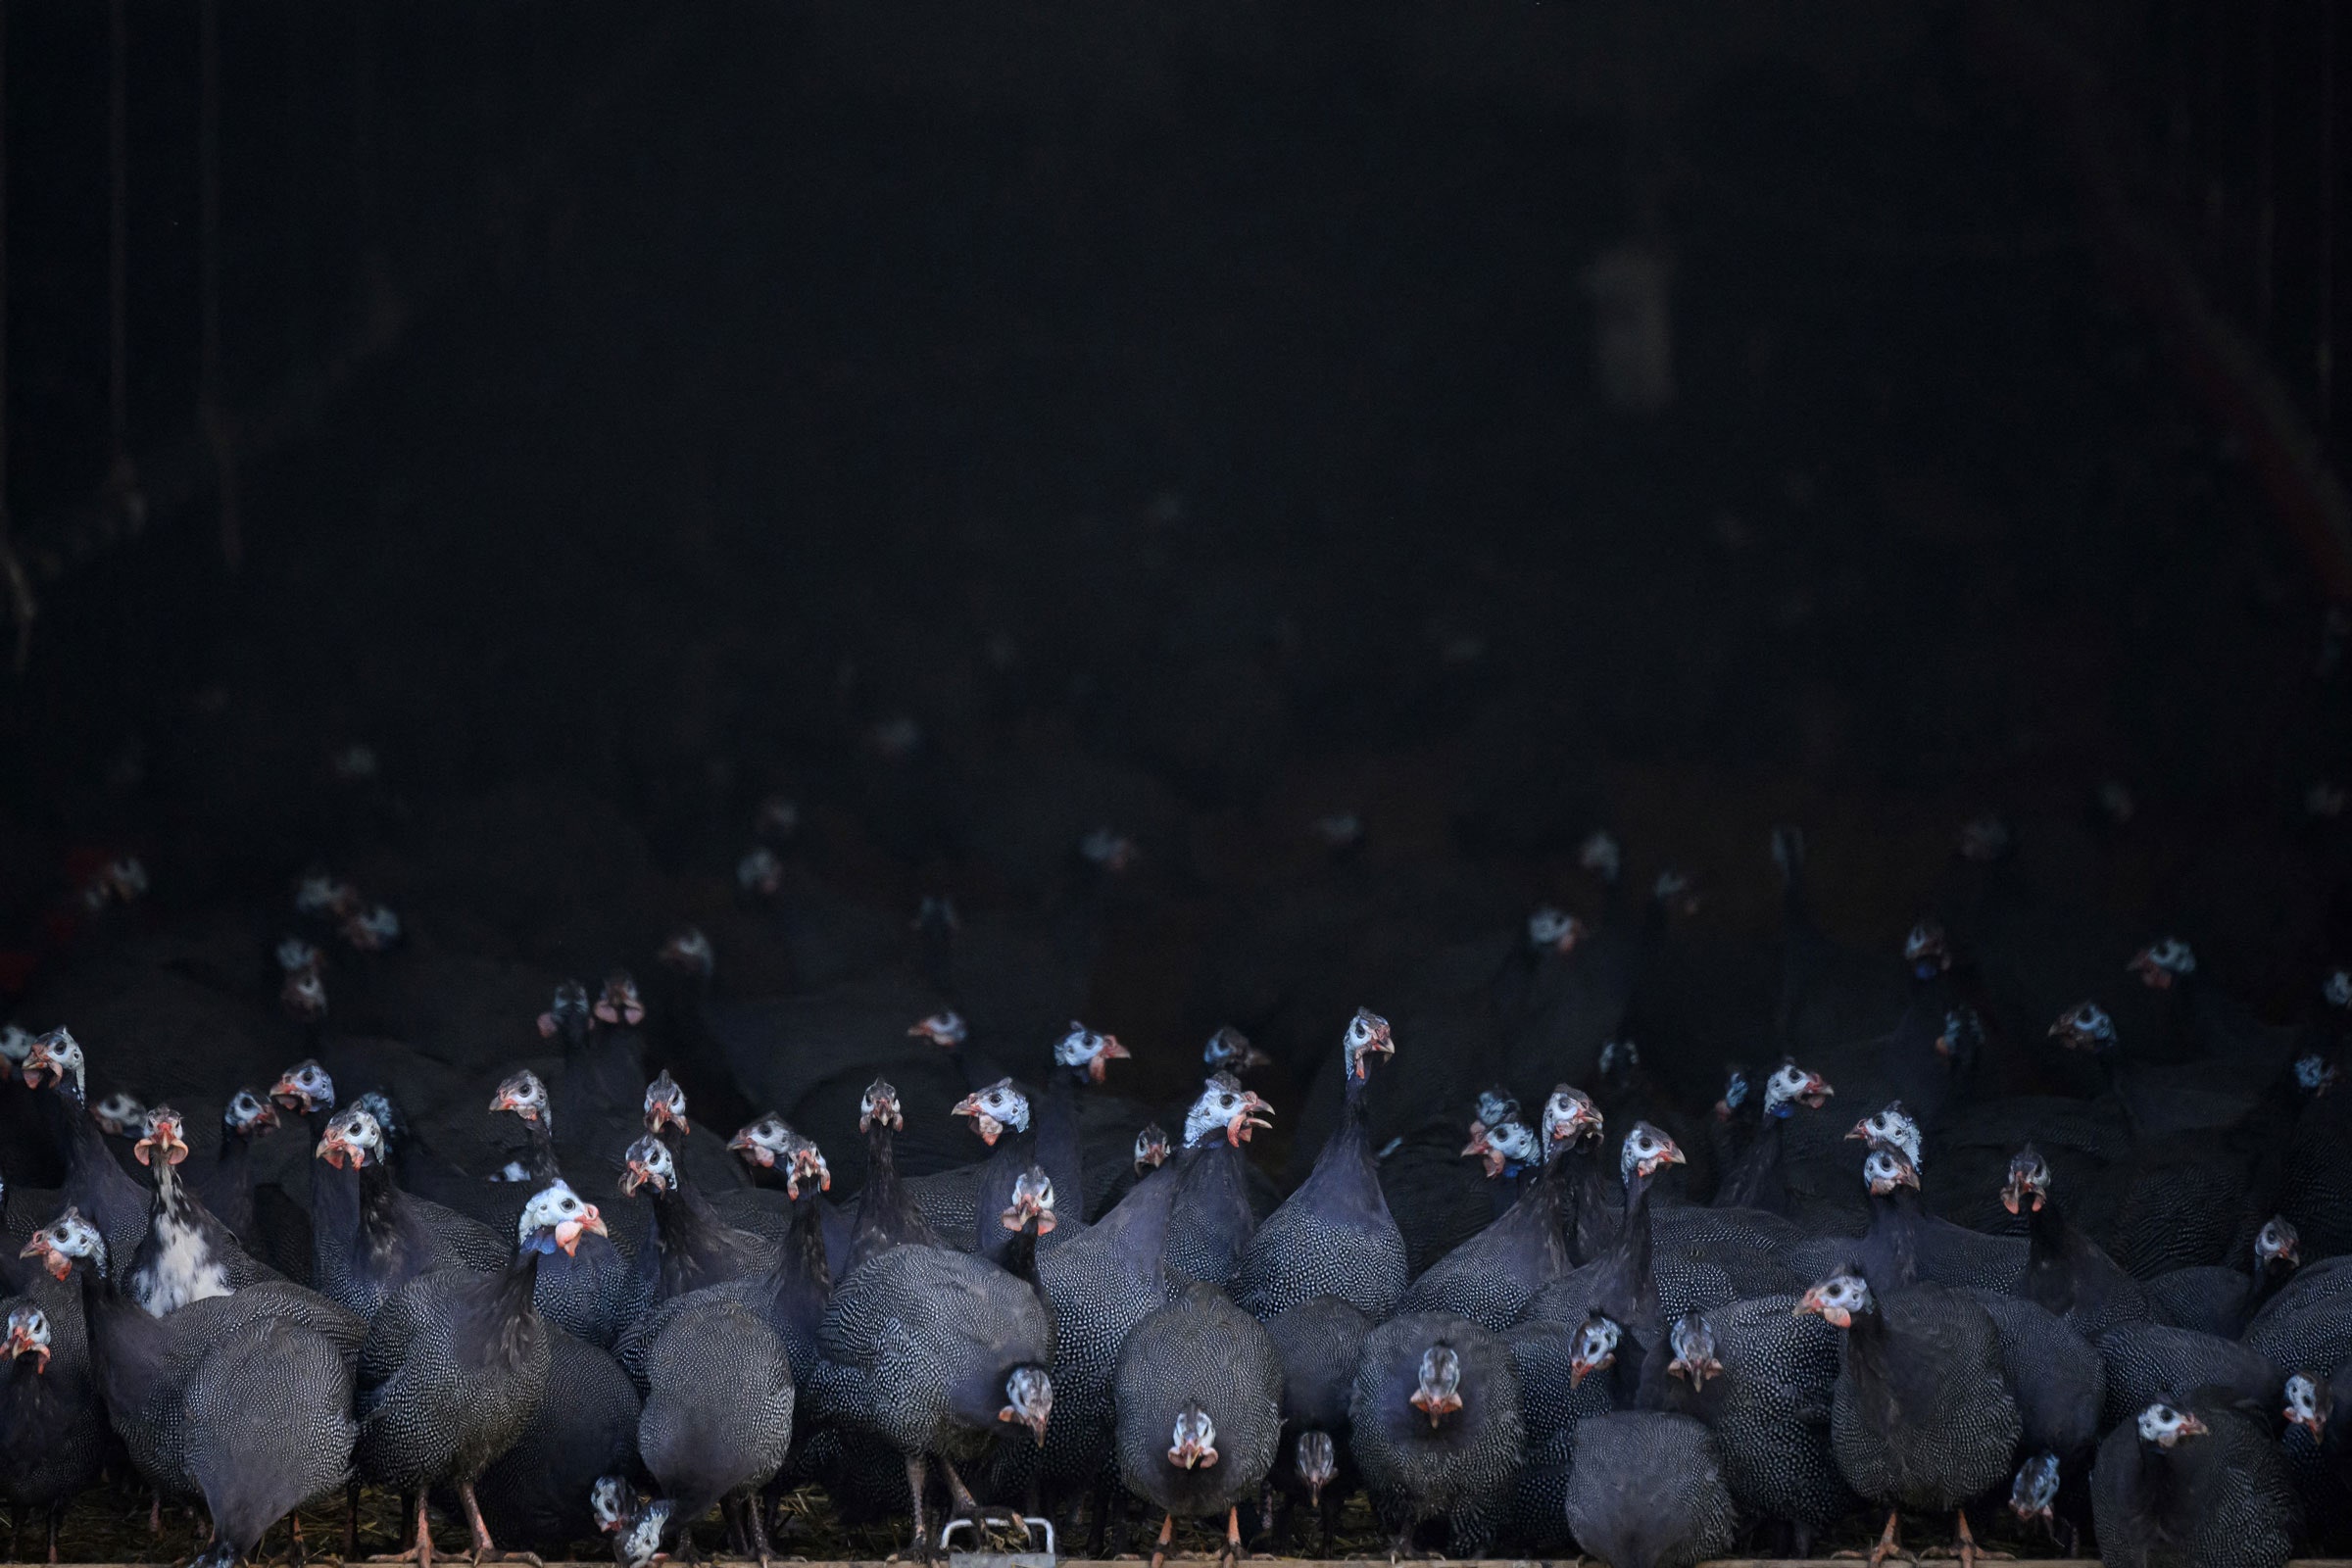 la oms expresa una “enorme preocupación” por el aumento de contagios de gripe aviar en humanos